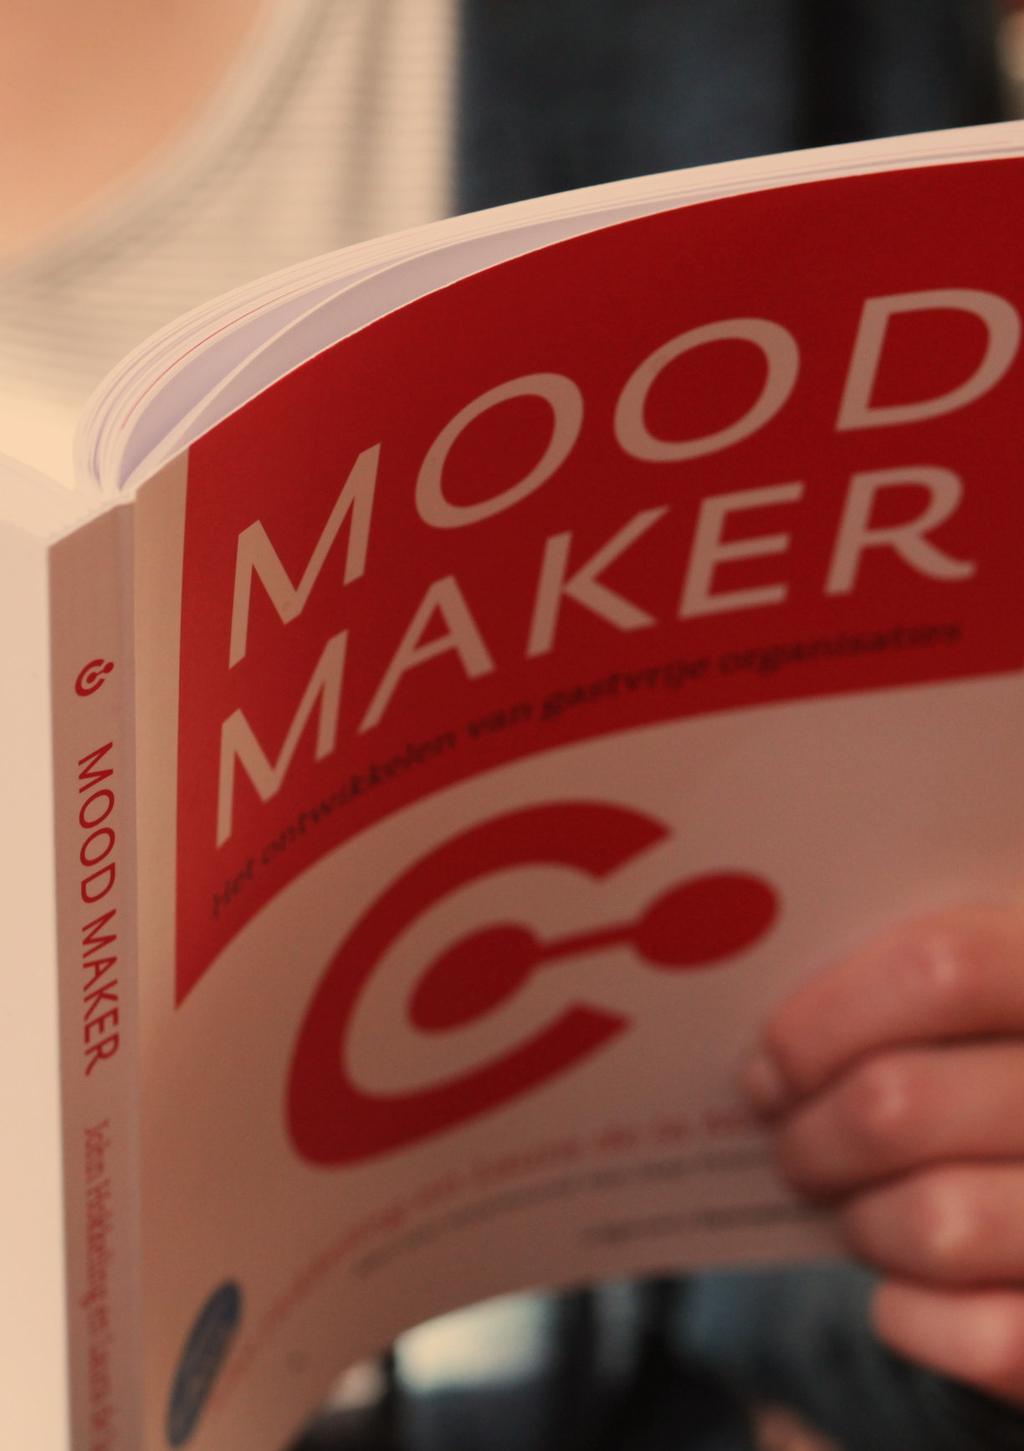 MOOD MAKER FILOSOFIE MOOD MAKER BOEK In het boek Mood Maker - het ontwikkelen van gastvrije organisaties schrijft John Hokkeling (mede eigenaar van SYNDLE): Op mijn zoektocht naar literatuur over het